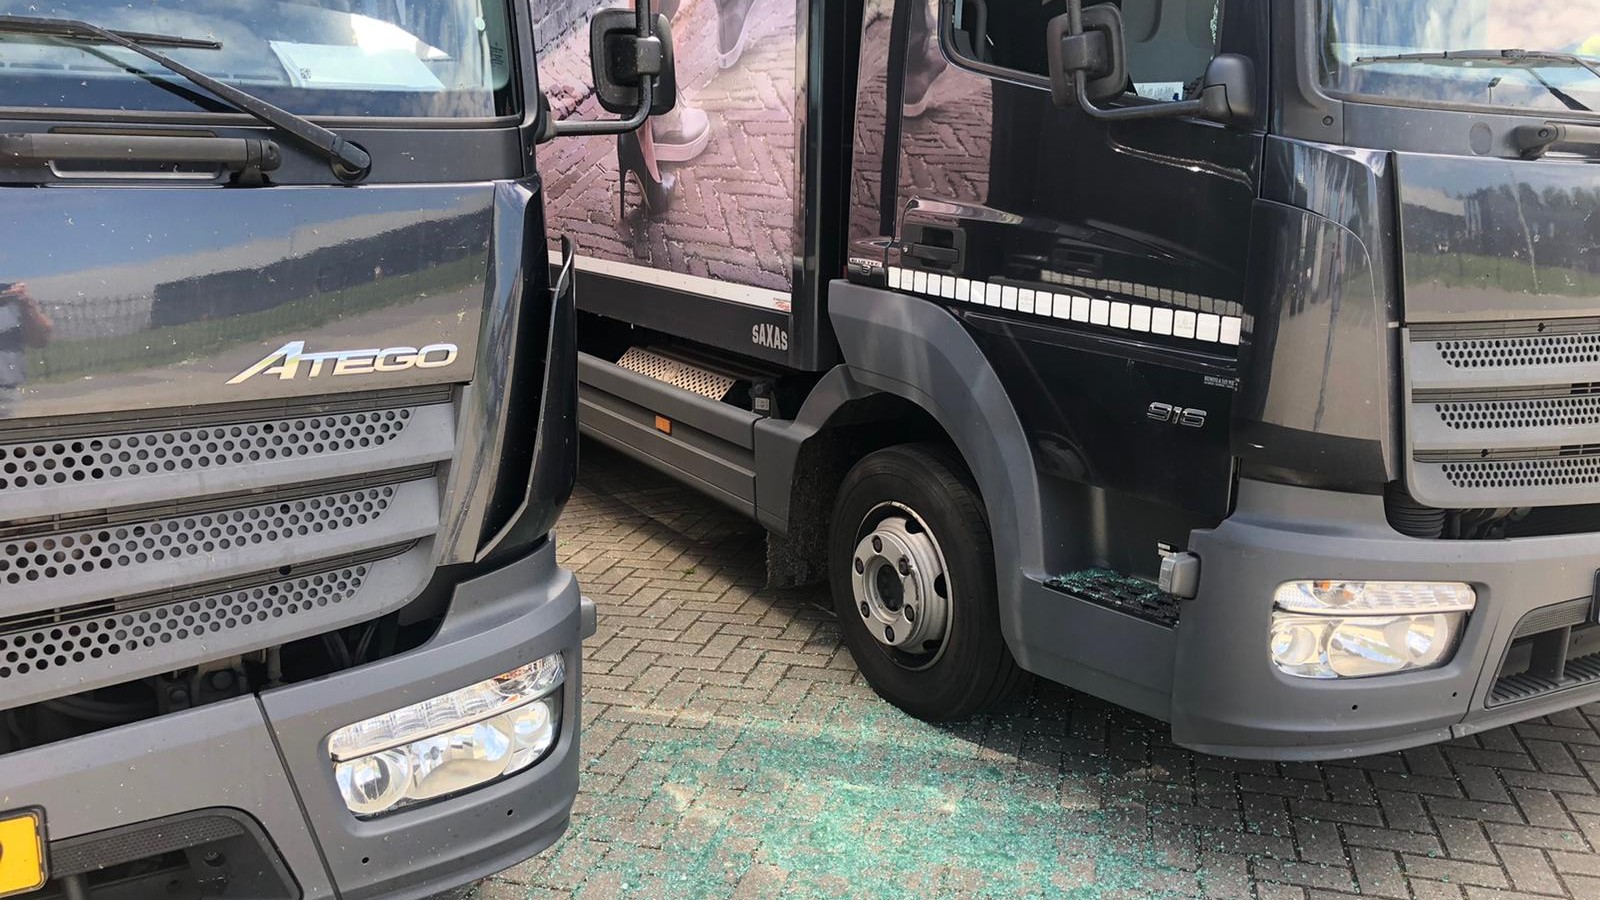 Reeks vernielingen vrachtwagens Haarlemmermeer